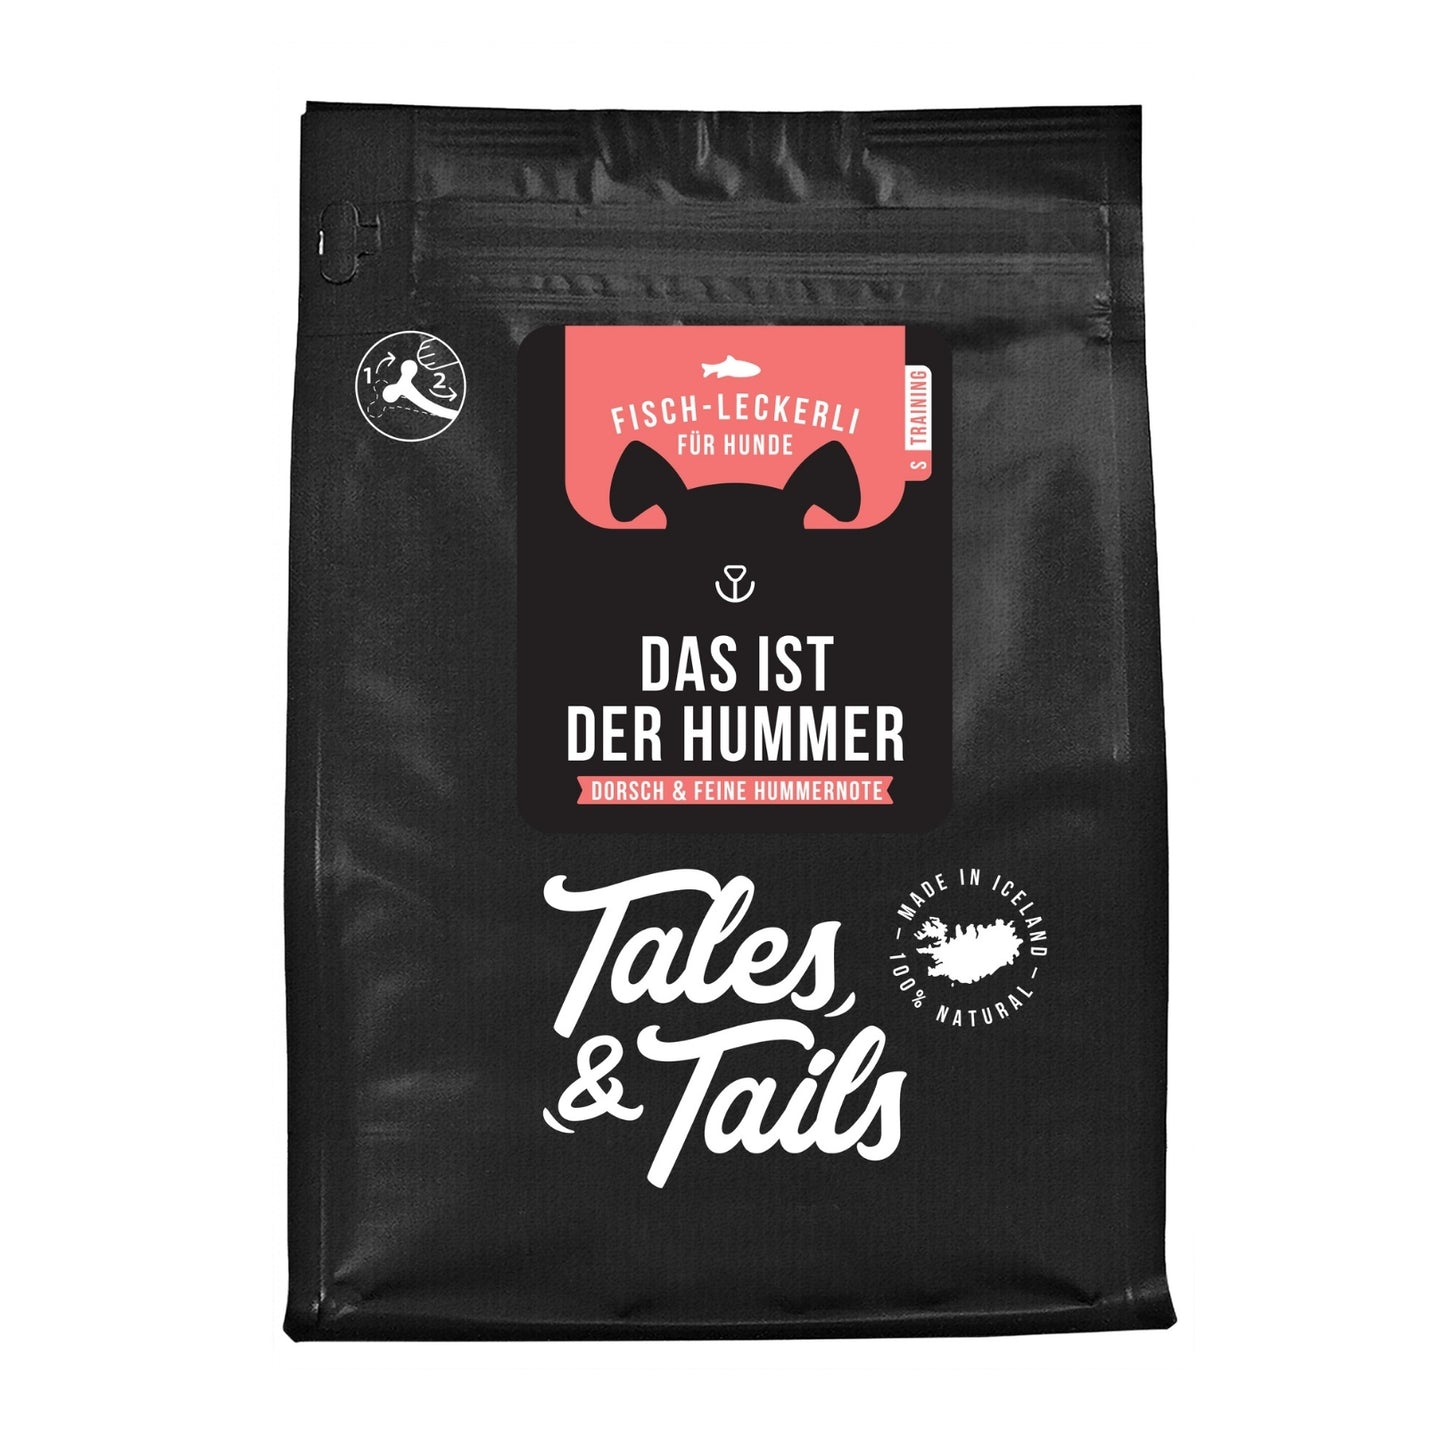 Tales & Tails Fischlecherli mit Hummer Packung